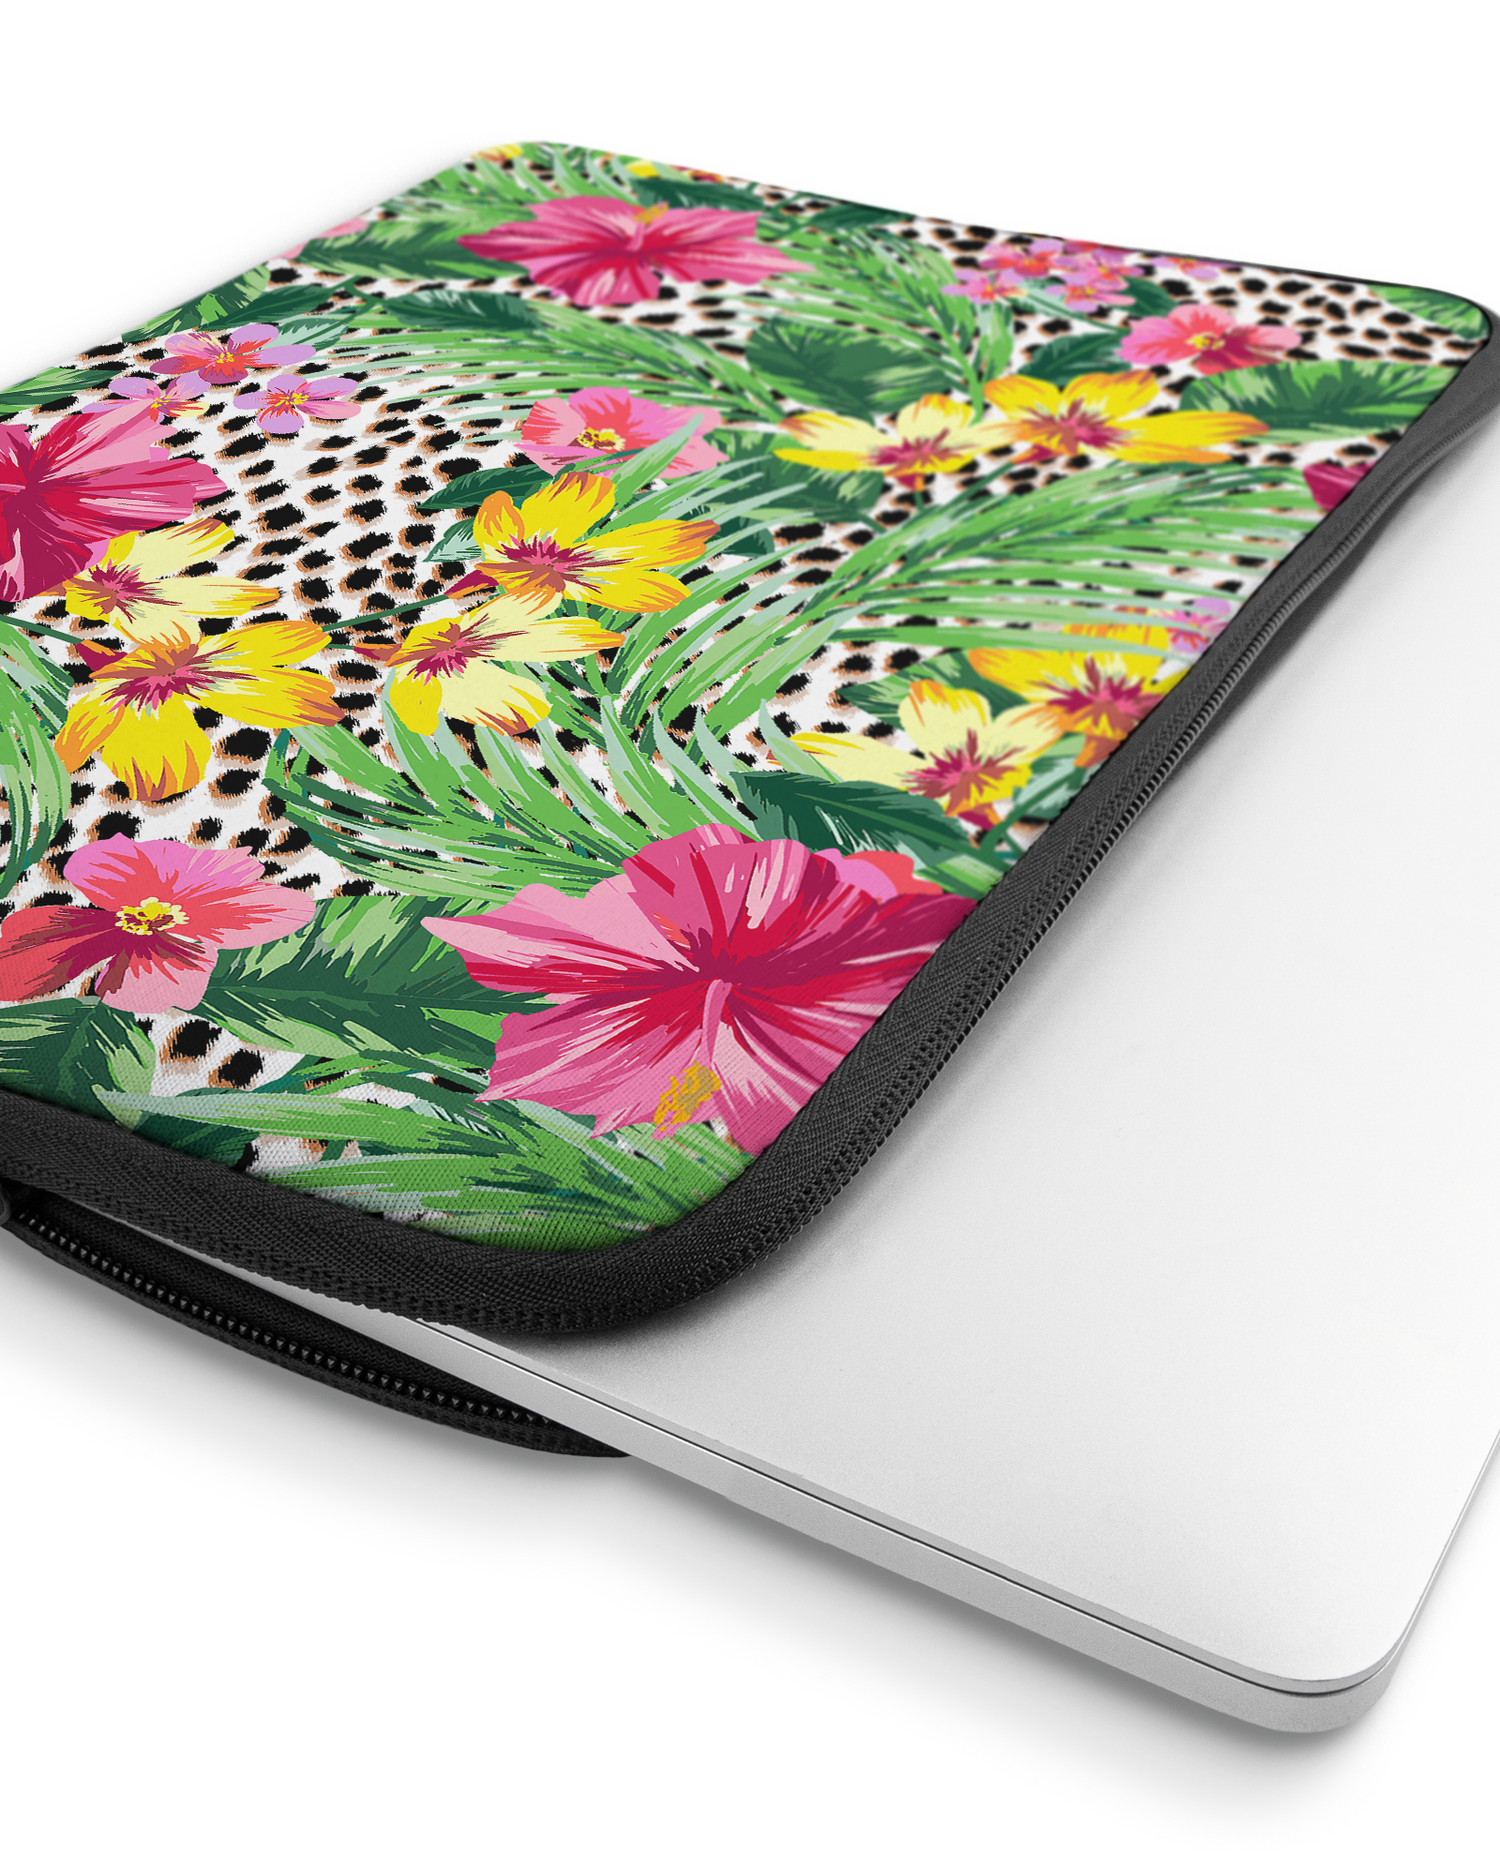 Tropical Cheetah Laptophülle 16 Zoll mit Gerät im Inneren